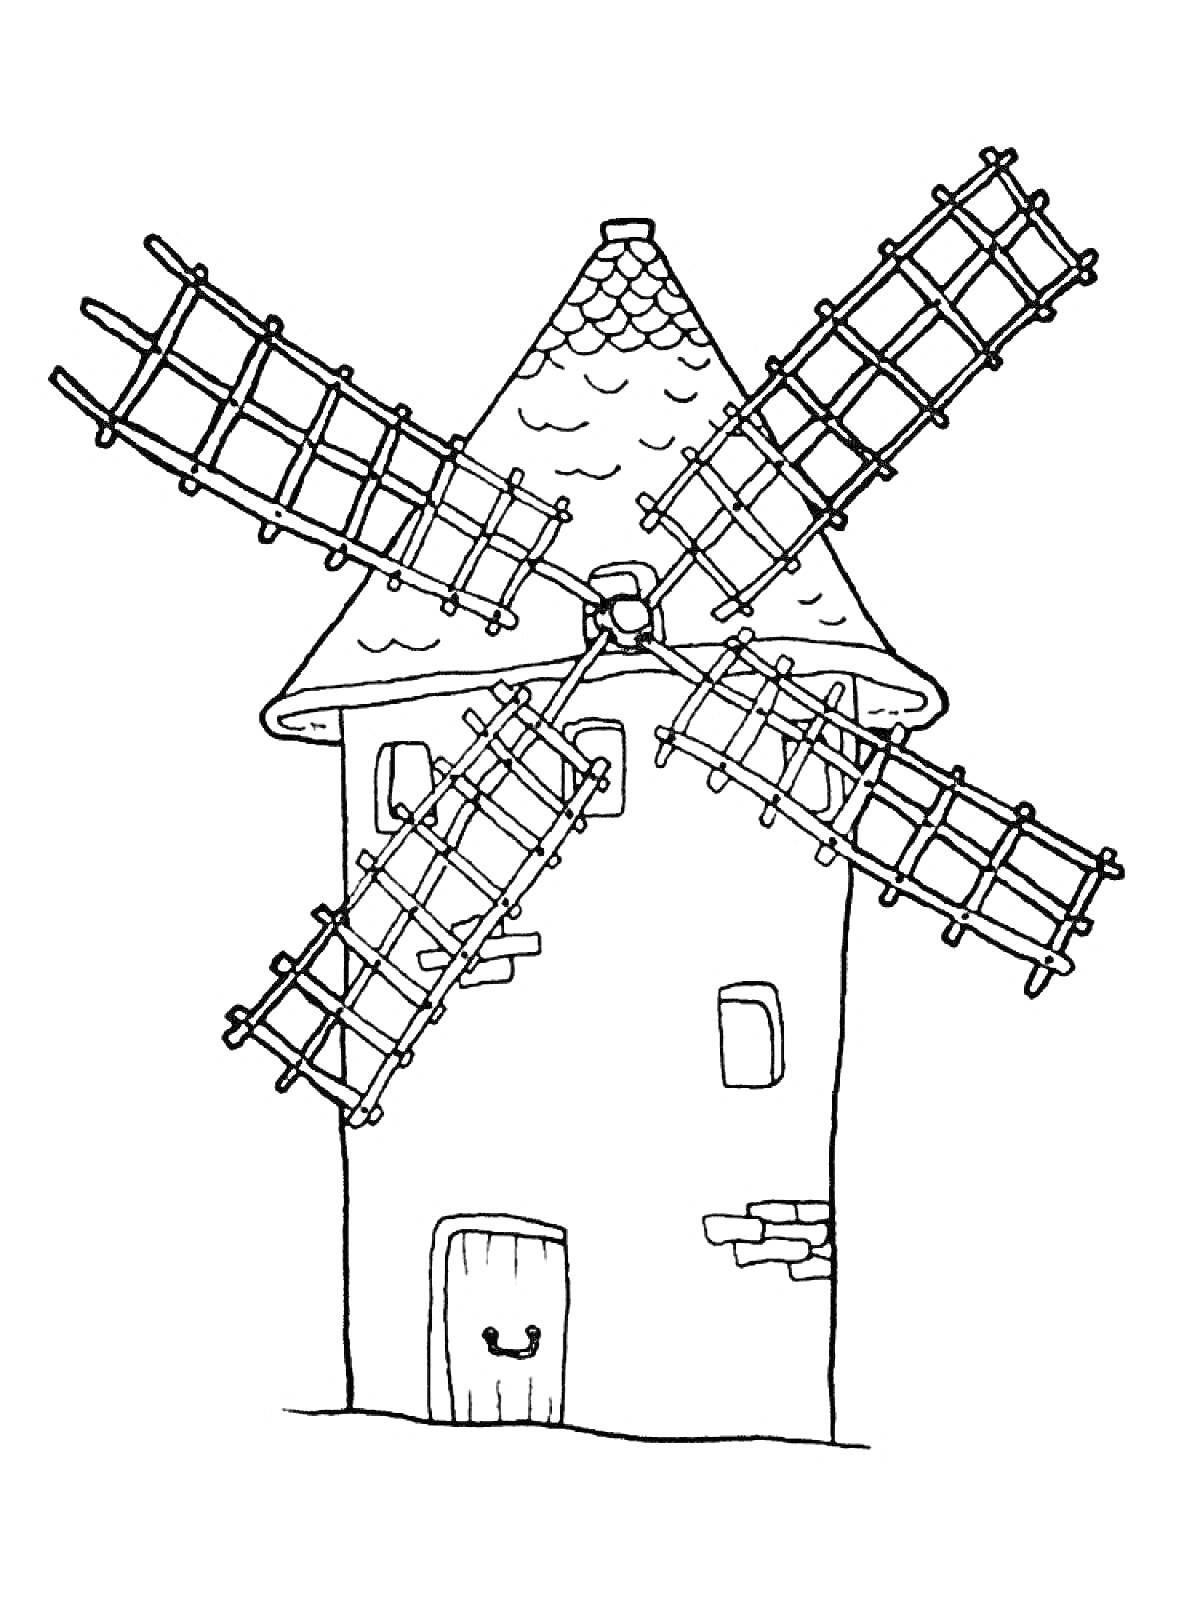 Раскраска Мельница с большой крышей, четырьмя лопастями, дверью и окном